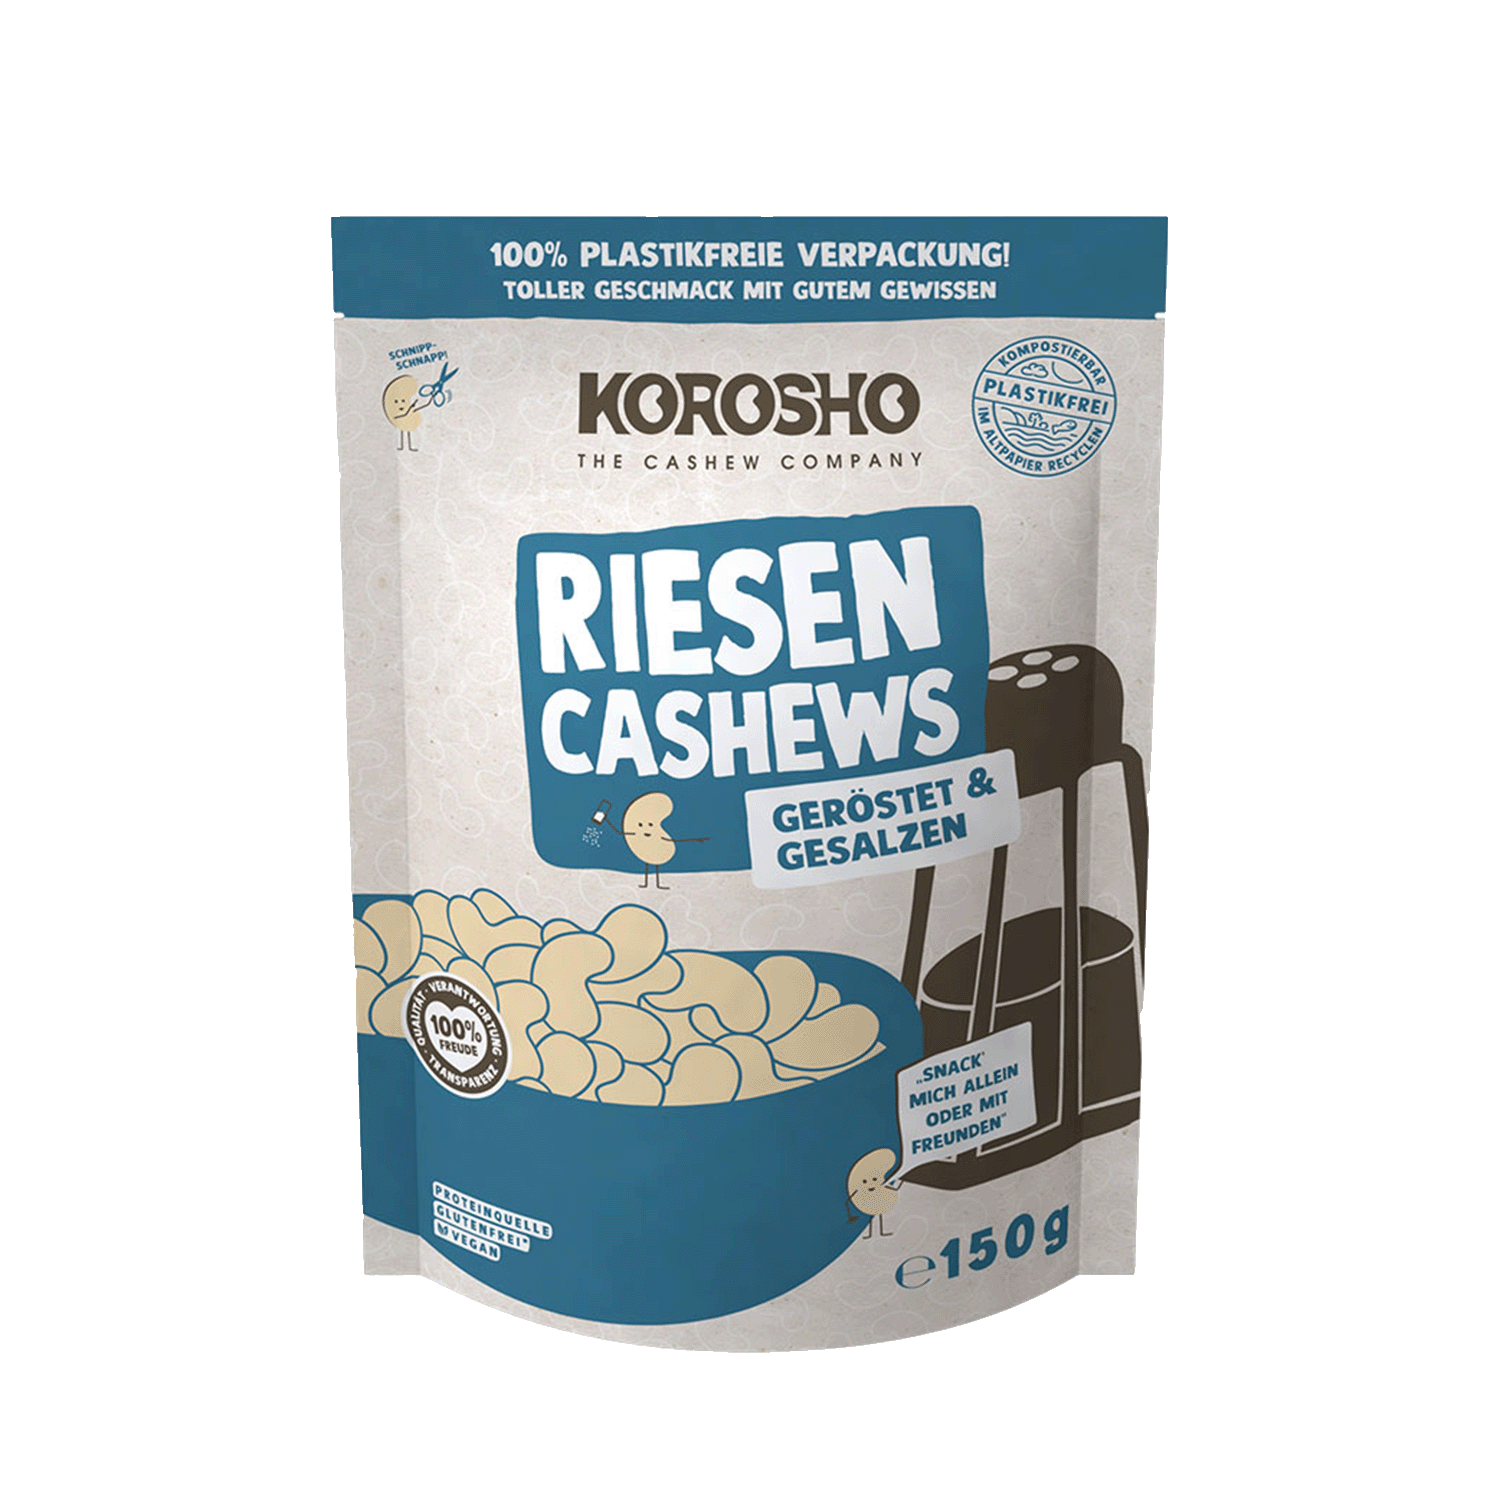 Riesen Cashews Geröstet & Gesalzen, 150g